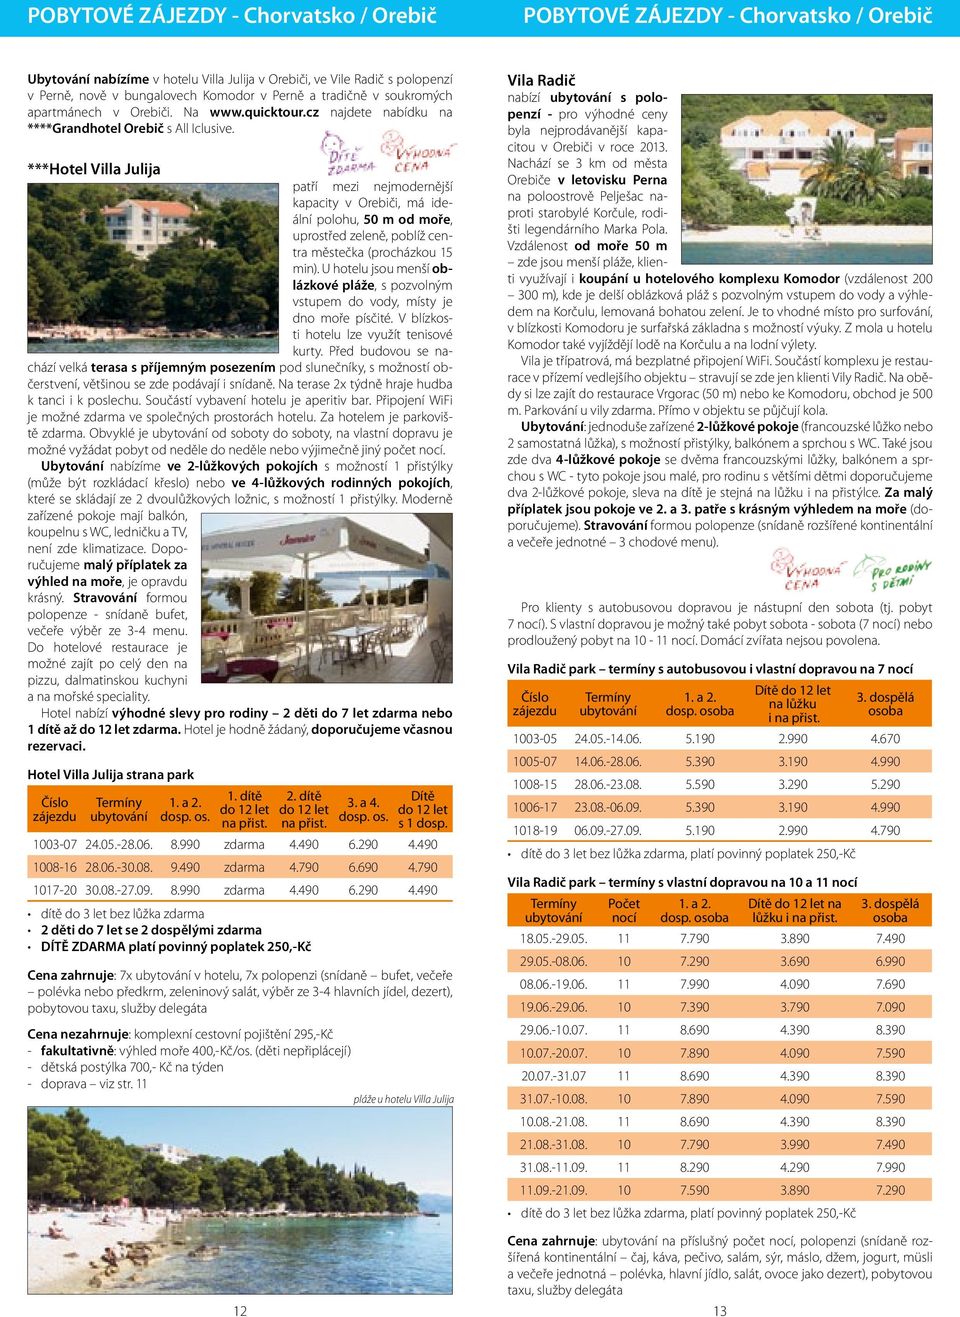 ***Hotel Villa Julija patří mezi nejmodernější kapacity v Orebiči, má ideální polohu, 50 m od moře, uprostřed zeleně, poblíž centra městečka (procházkou 15 min).